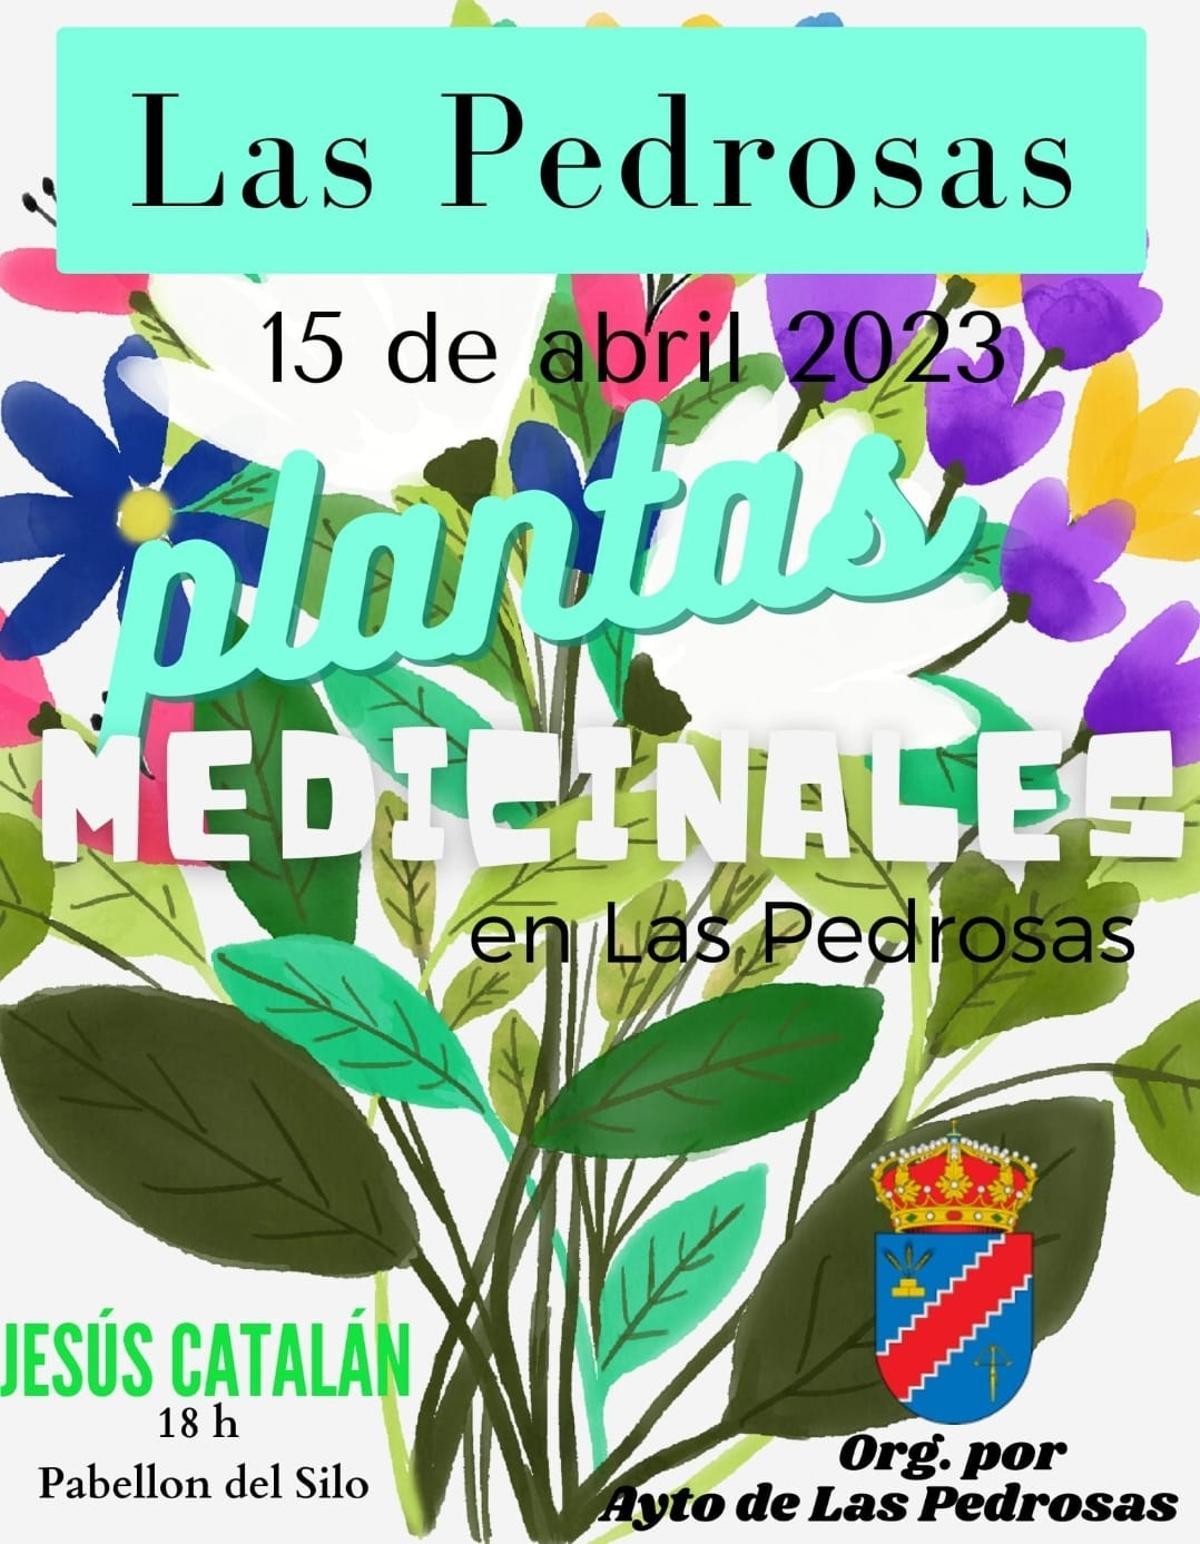 Ponencia sobre plantas medicinales con Jesús Catalán